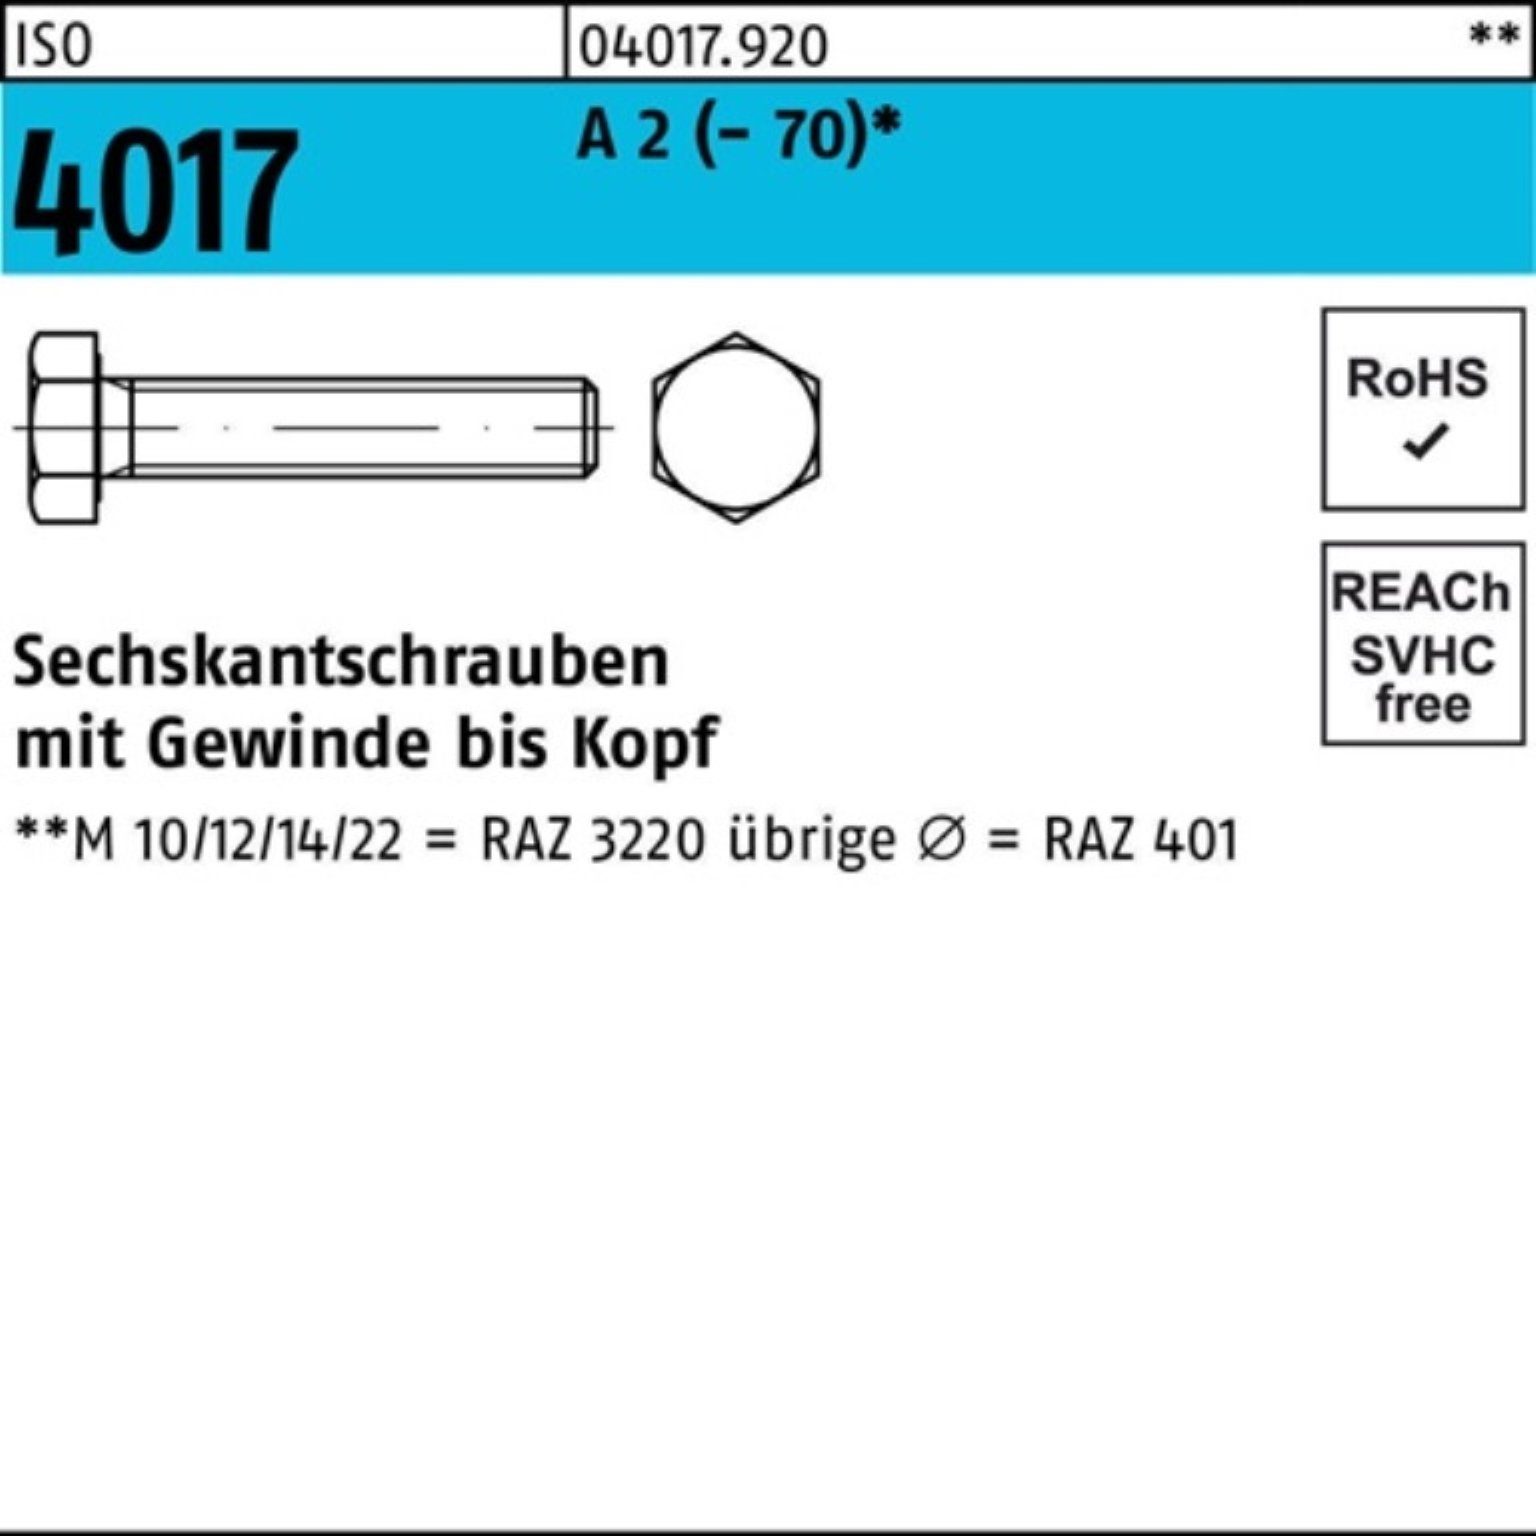 Bufab Sechskantschraube 100er Pack Sechskantschraube ISO 4017 VG M30x 60 A 2 (70) 1 Stück I